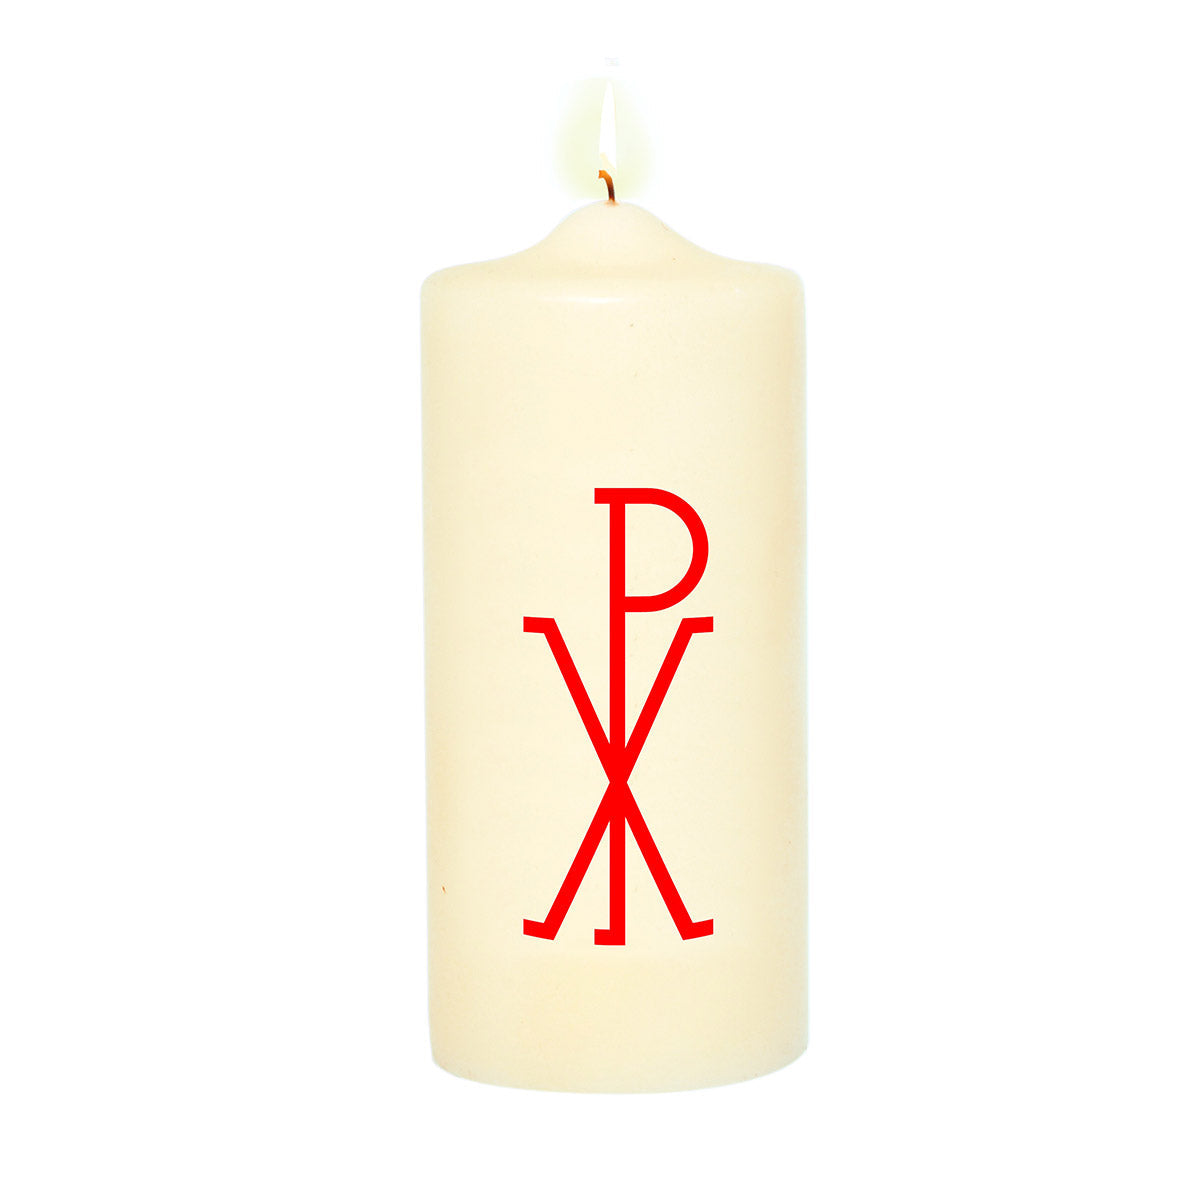 Cierge de baptême 11 cm Croix grégorienne blanc cassé ambre (x18)   Ciergerie Desfossés cierges, bougies, veilleuses votives, neuvaines,  achetez en ligne.